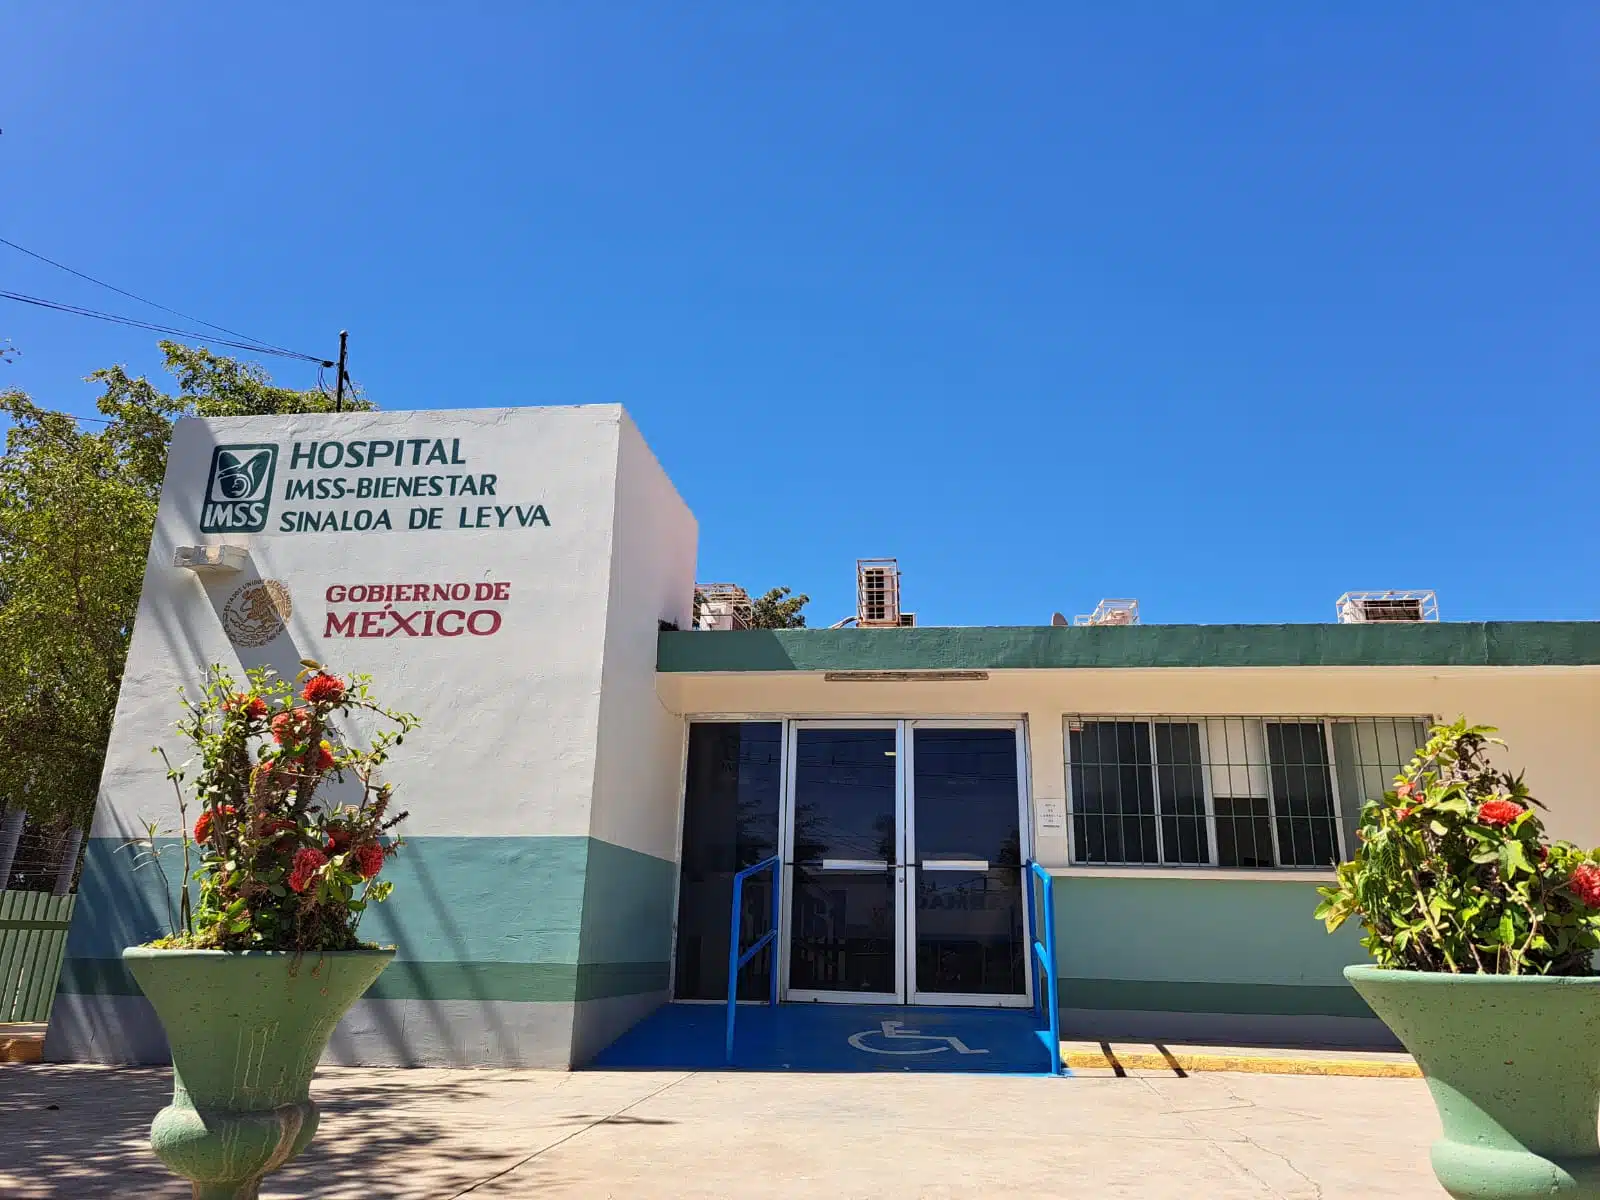 Hospital IMSS-Bienestar Sinaloa de Leyva